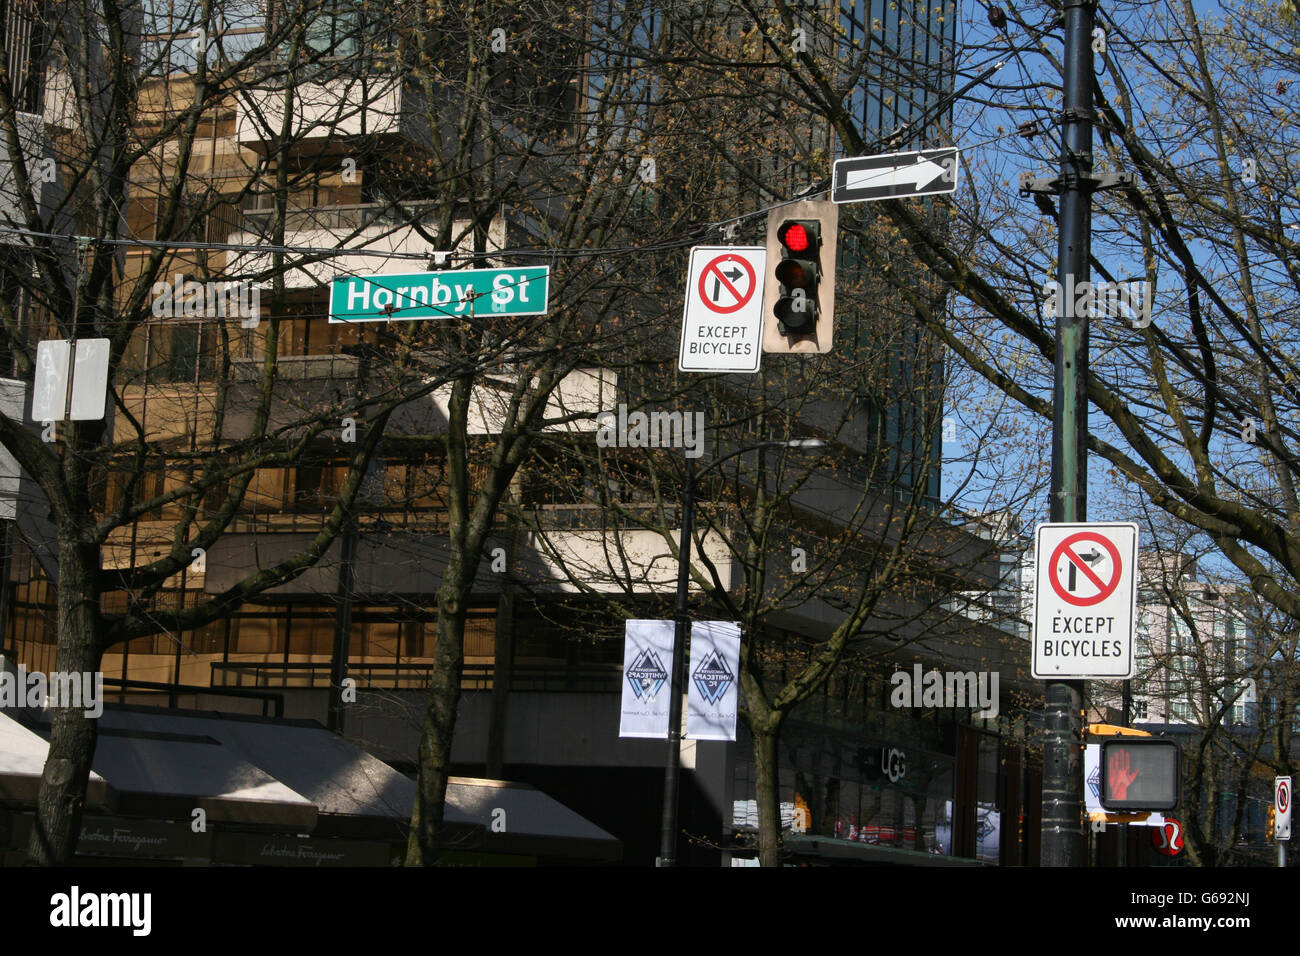 Enseigne Hornby St avec feux rouges et panneaux de signalisation routière Banque D'Images